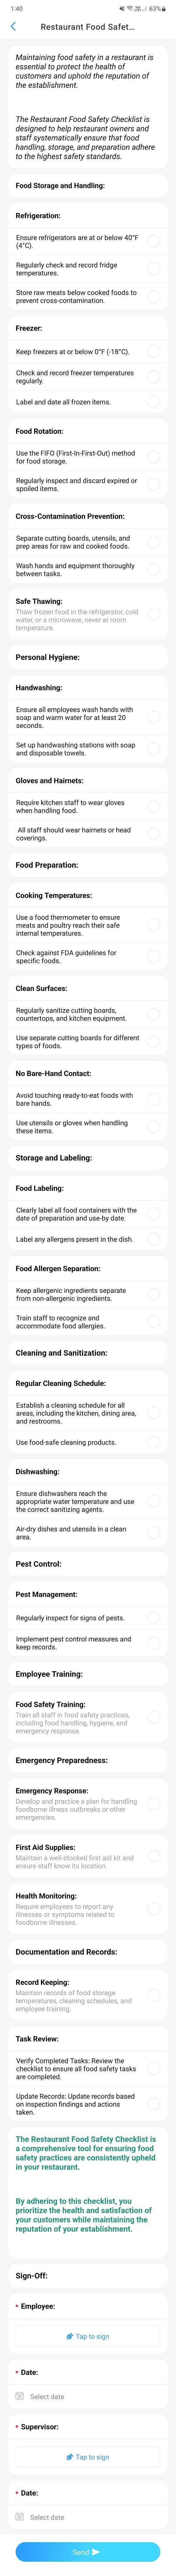 Restaurant Food Safety Checklist Template